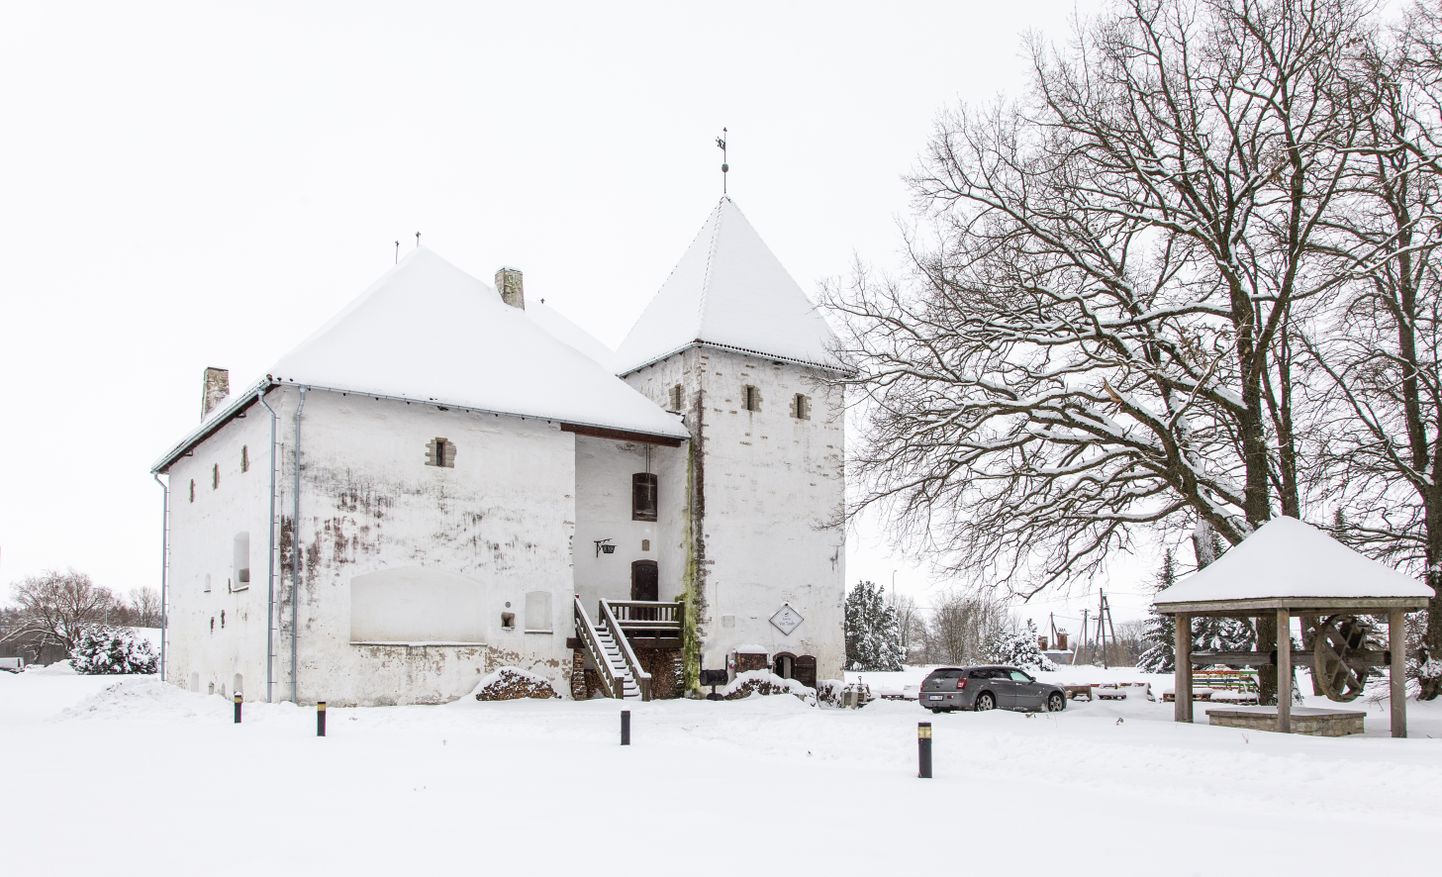 Сейчас ресторан "Von Taube", действующий в замке Пуртсе, открыт последние дни, а с января закроется, пока не станет ясно, каковы будут планы волости относительно этого здания.